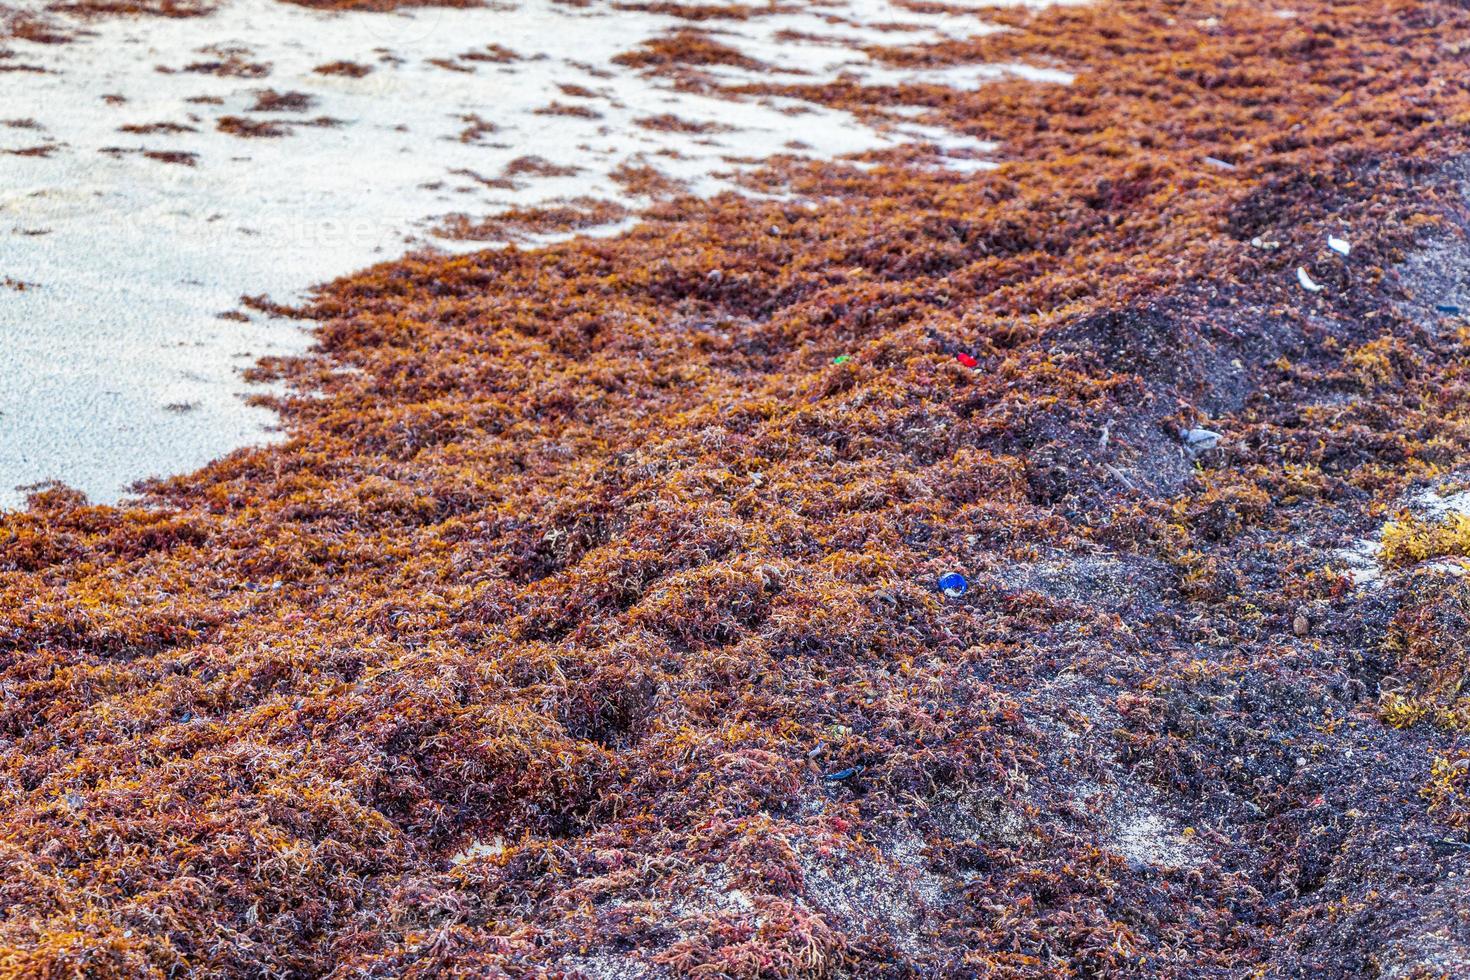 muy repugnante playa sargazo de algas rojas con contaminacion de basura mexico. foto